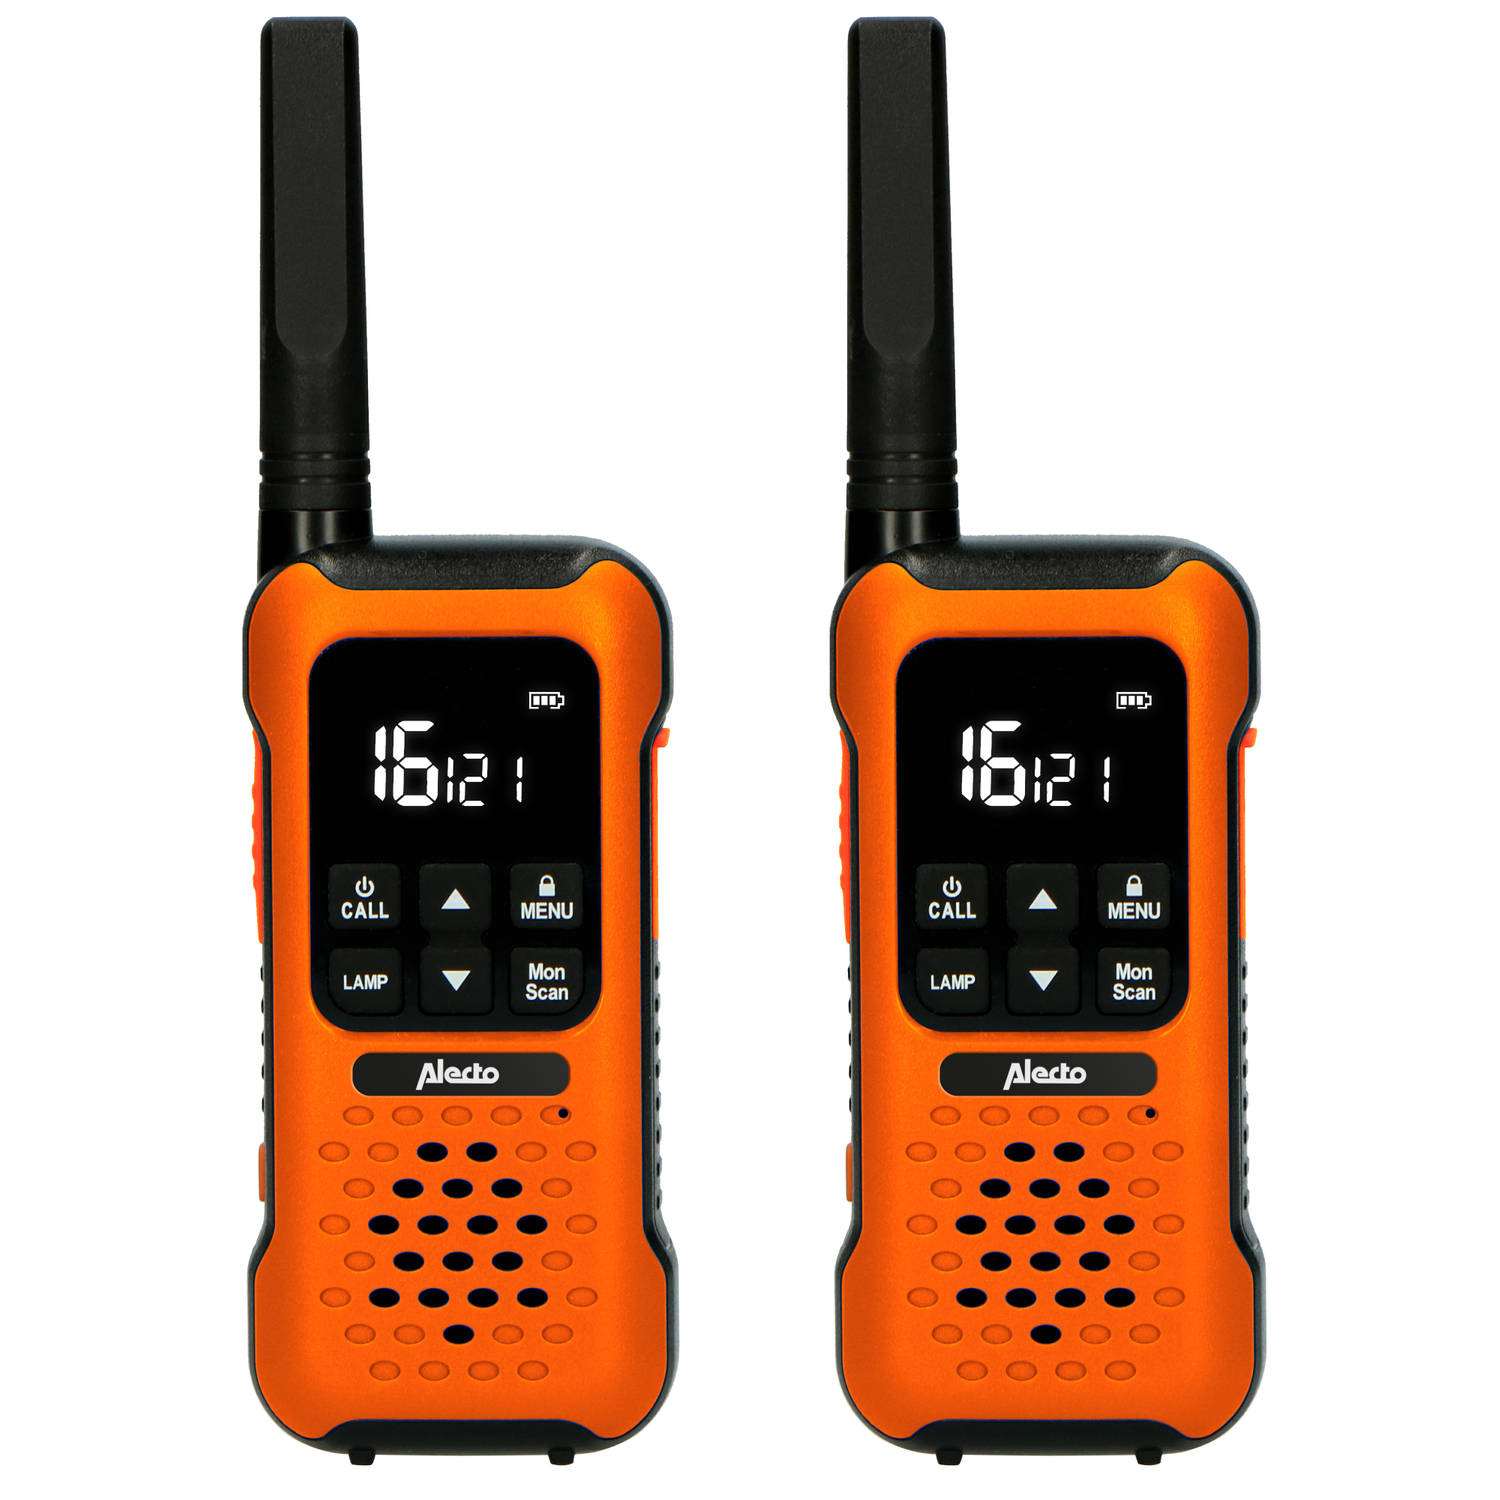 Daar Zeggen Ziekte Robuuste walkie talkie, tot 10 kilometer bereik Alecto FR300OE Oranje-Zwart  | Blokker